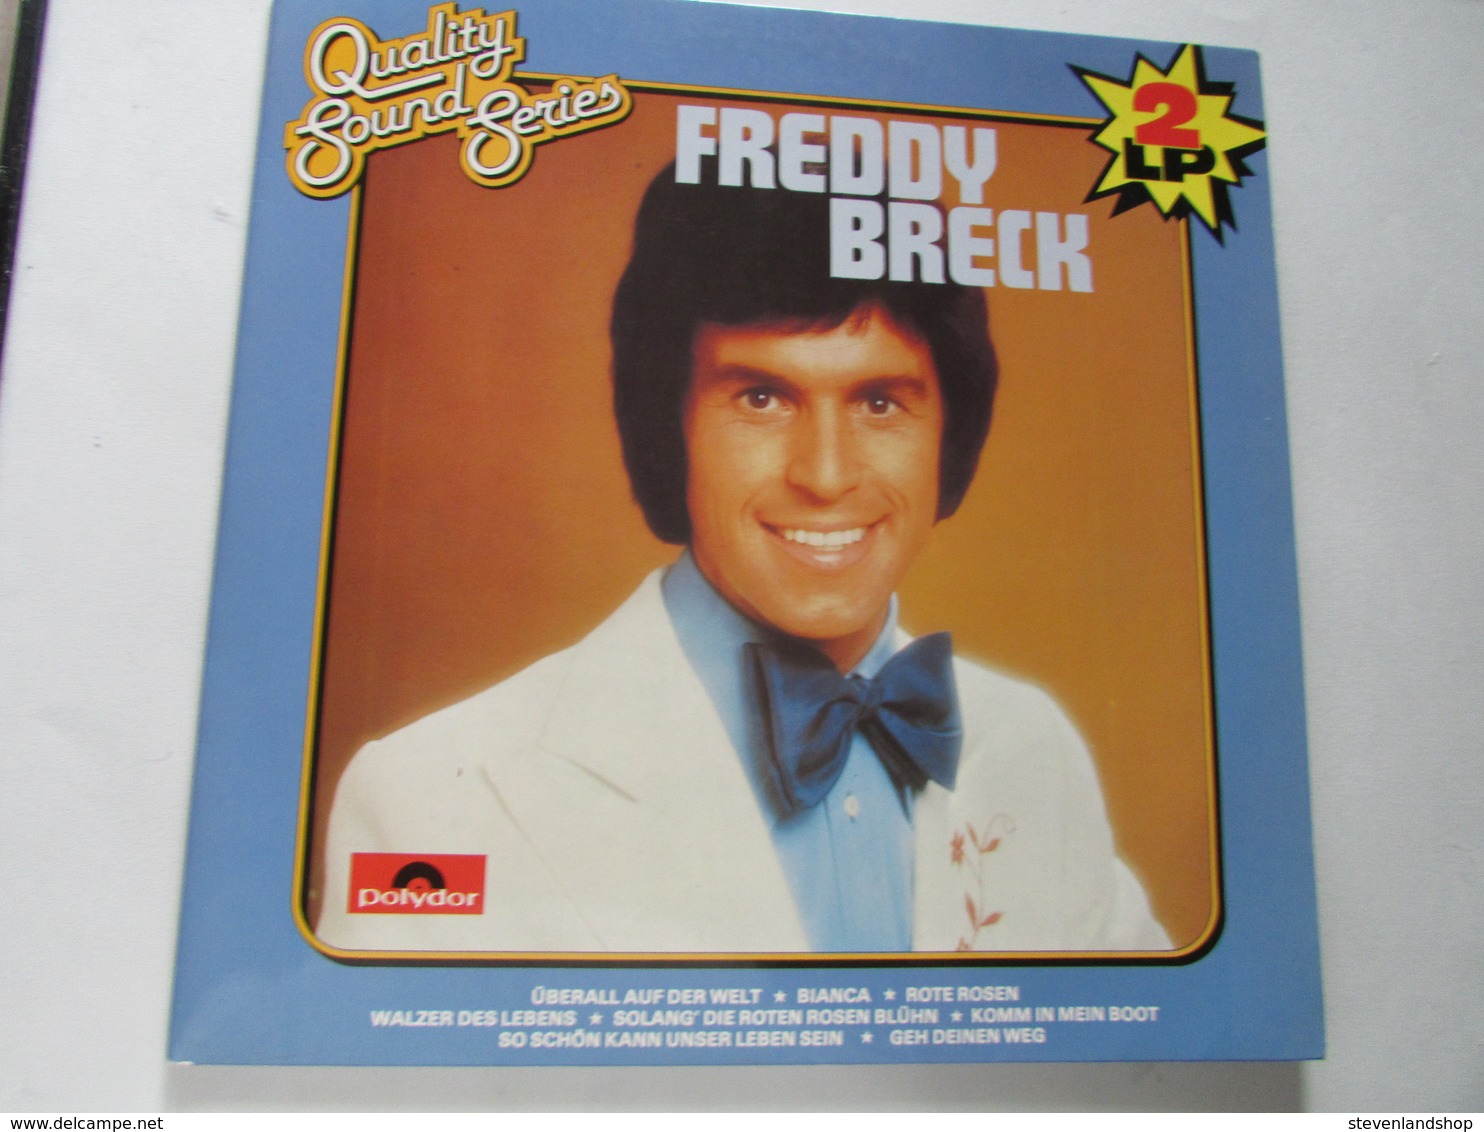 Freddy Breck, 2 LP 'S Quality Sound Series - Sonstige - Deutsche Musik